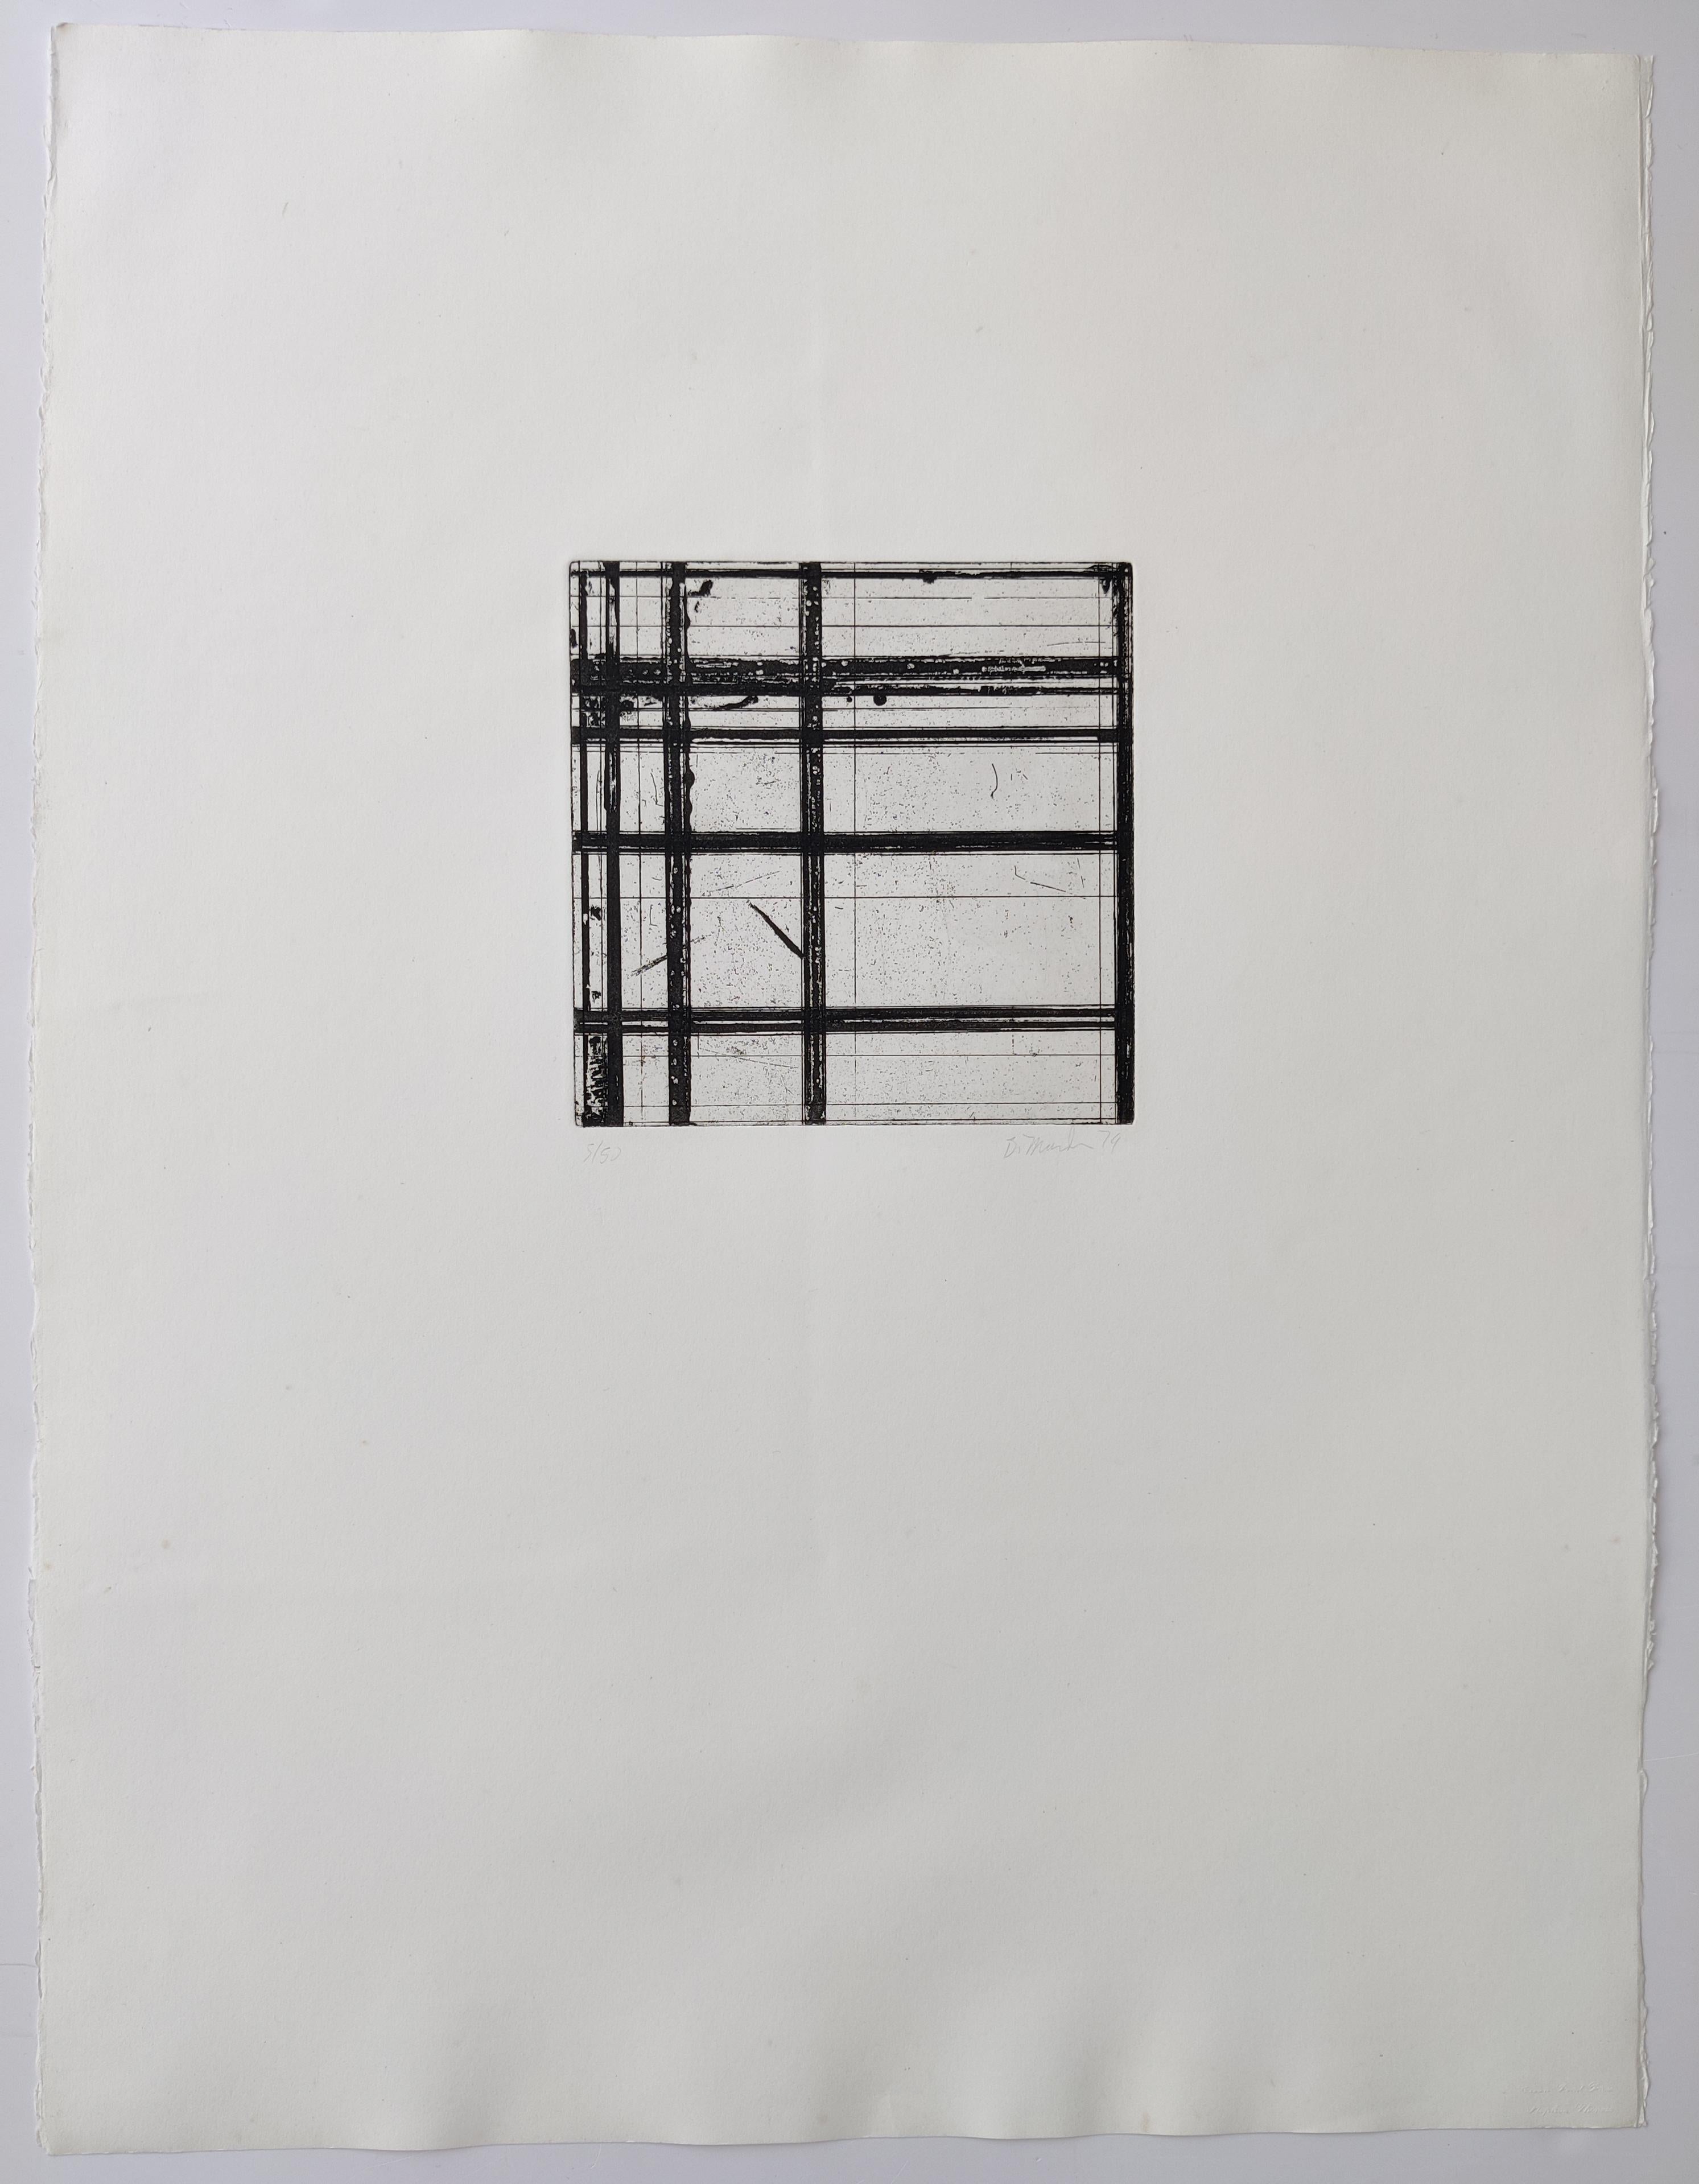 Brice Marden 
Carreaux, 1979
Gravure à l'aquatinte, sur papier satiné Somerset
Edition 5 / 50 en bas à gauche
Hang signé et daté en bas à droite
Taille de l'image 20 x 20 cm
Taille de la feuille 75 x 57 cm
Référence   P07849